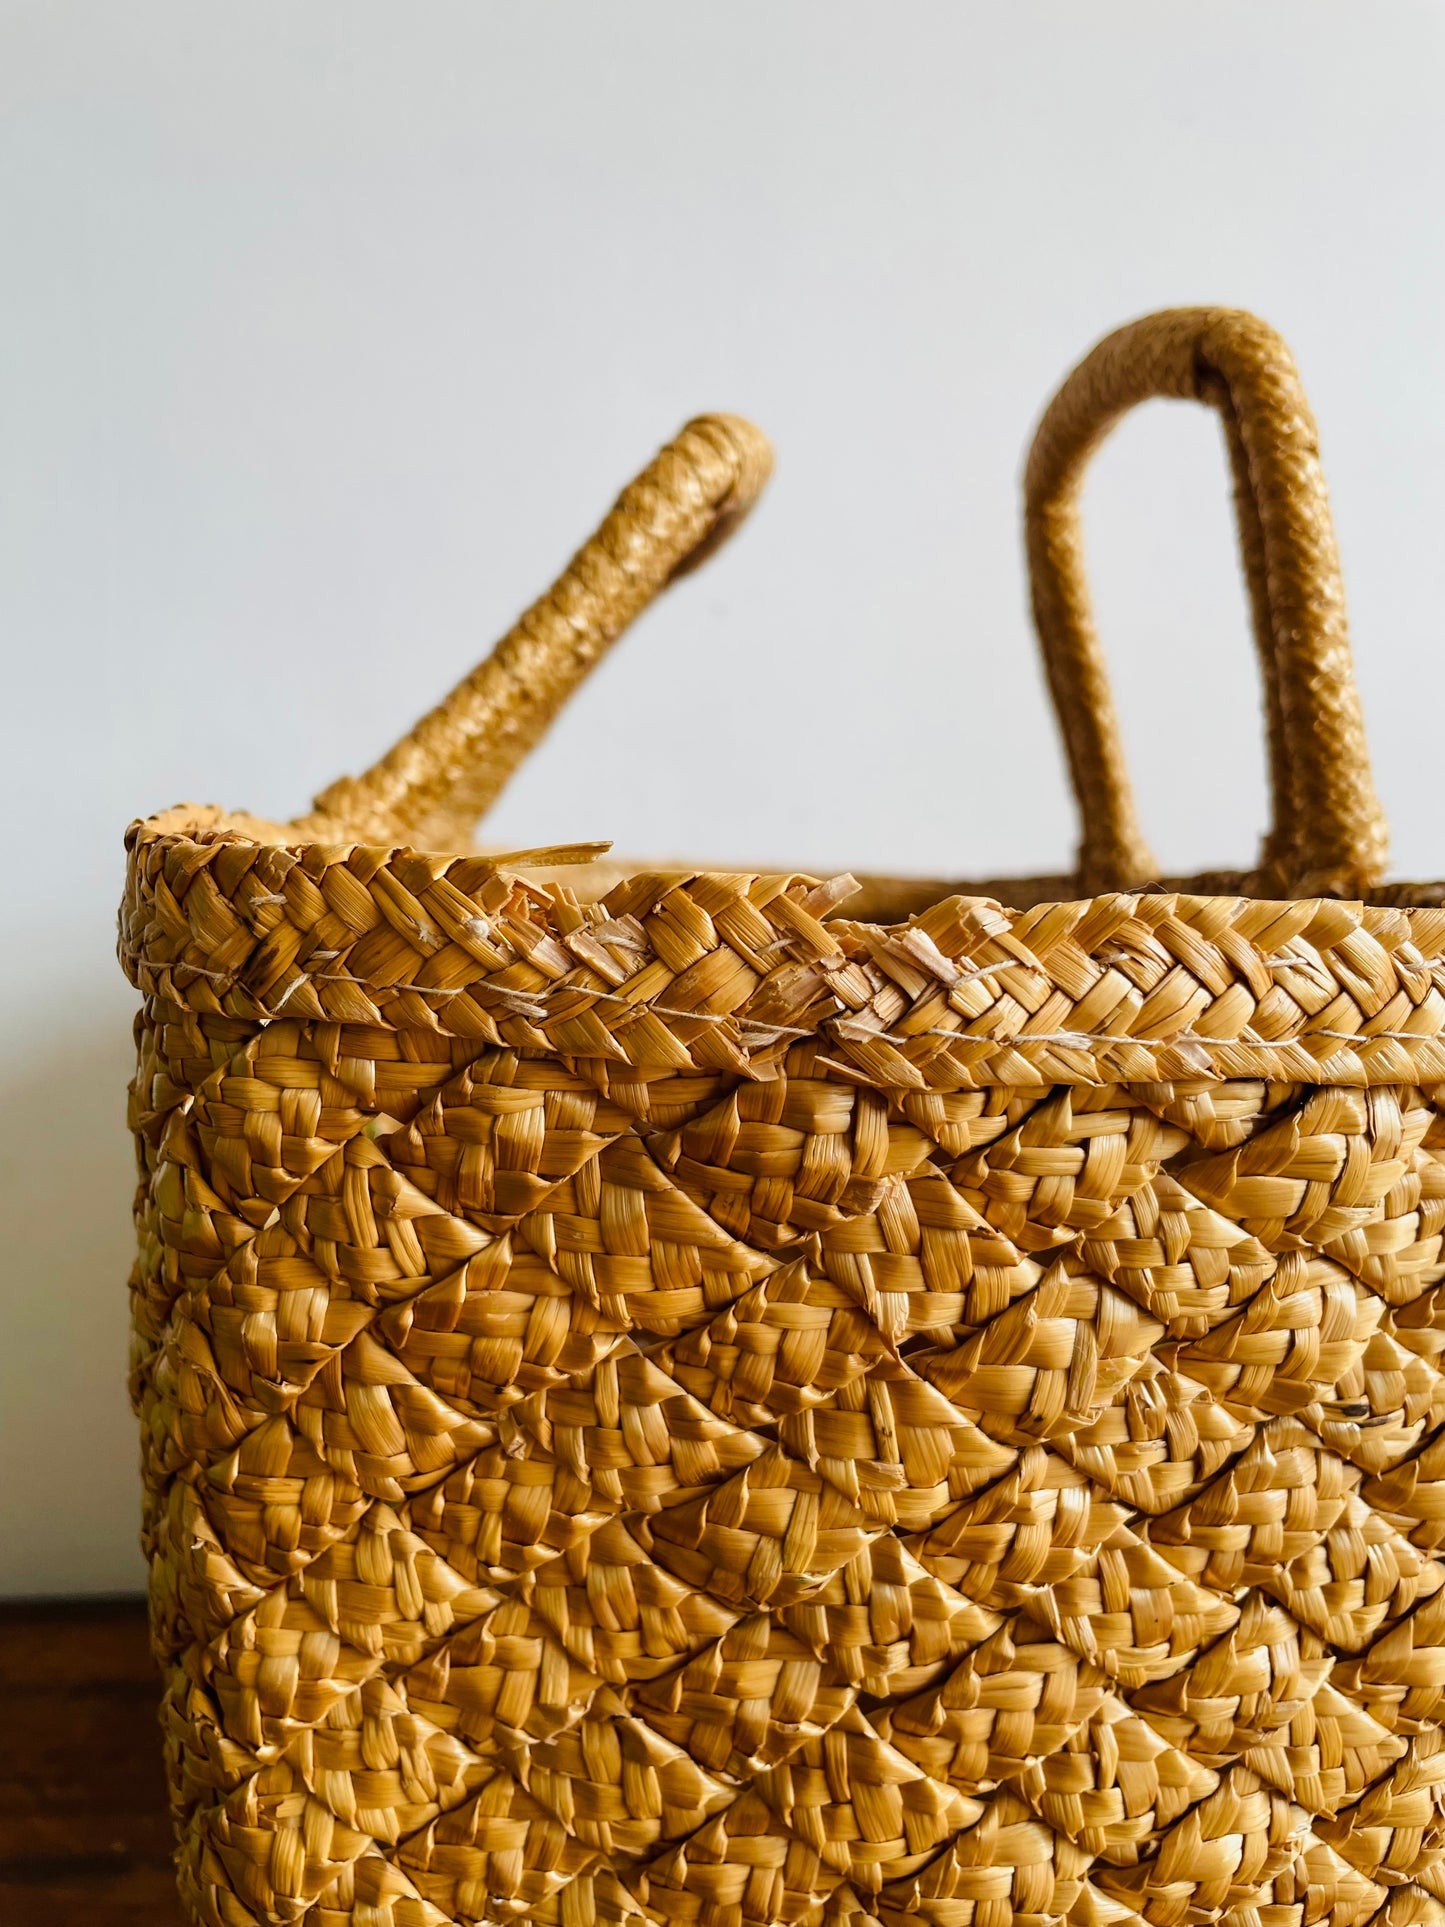 Woven Straw Beach Bag Purse with Raffia Starburst Flower Design